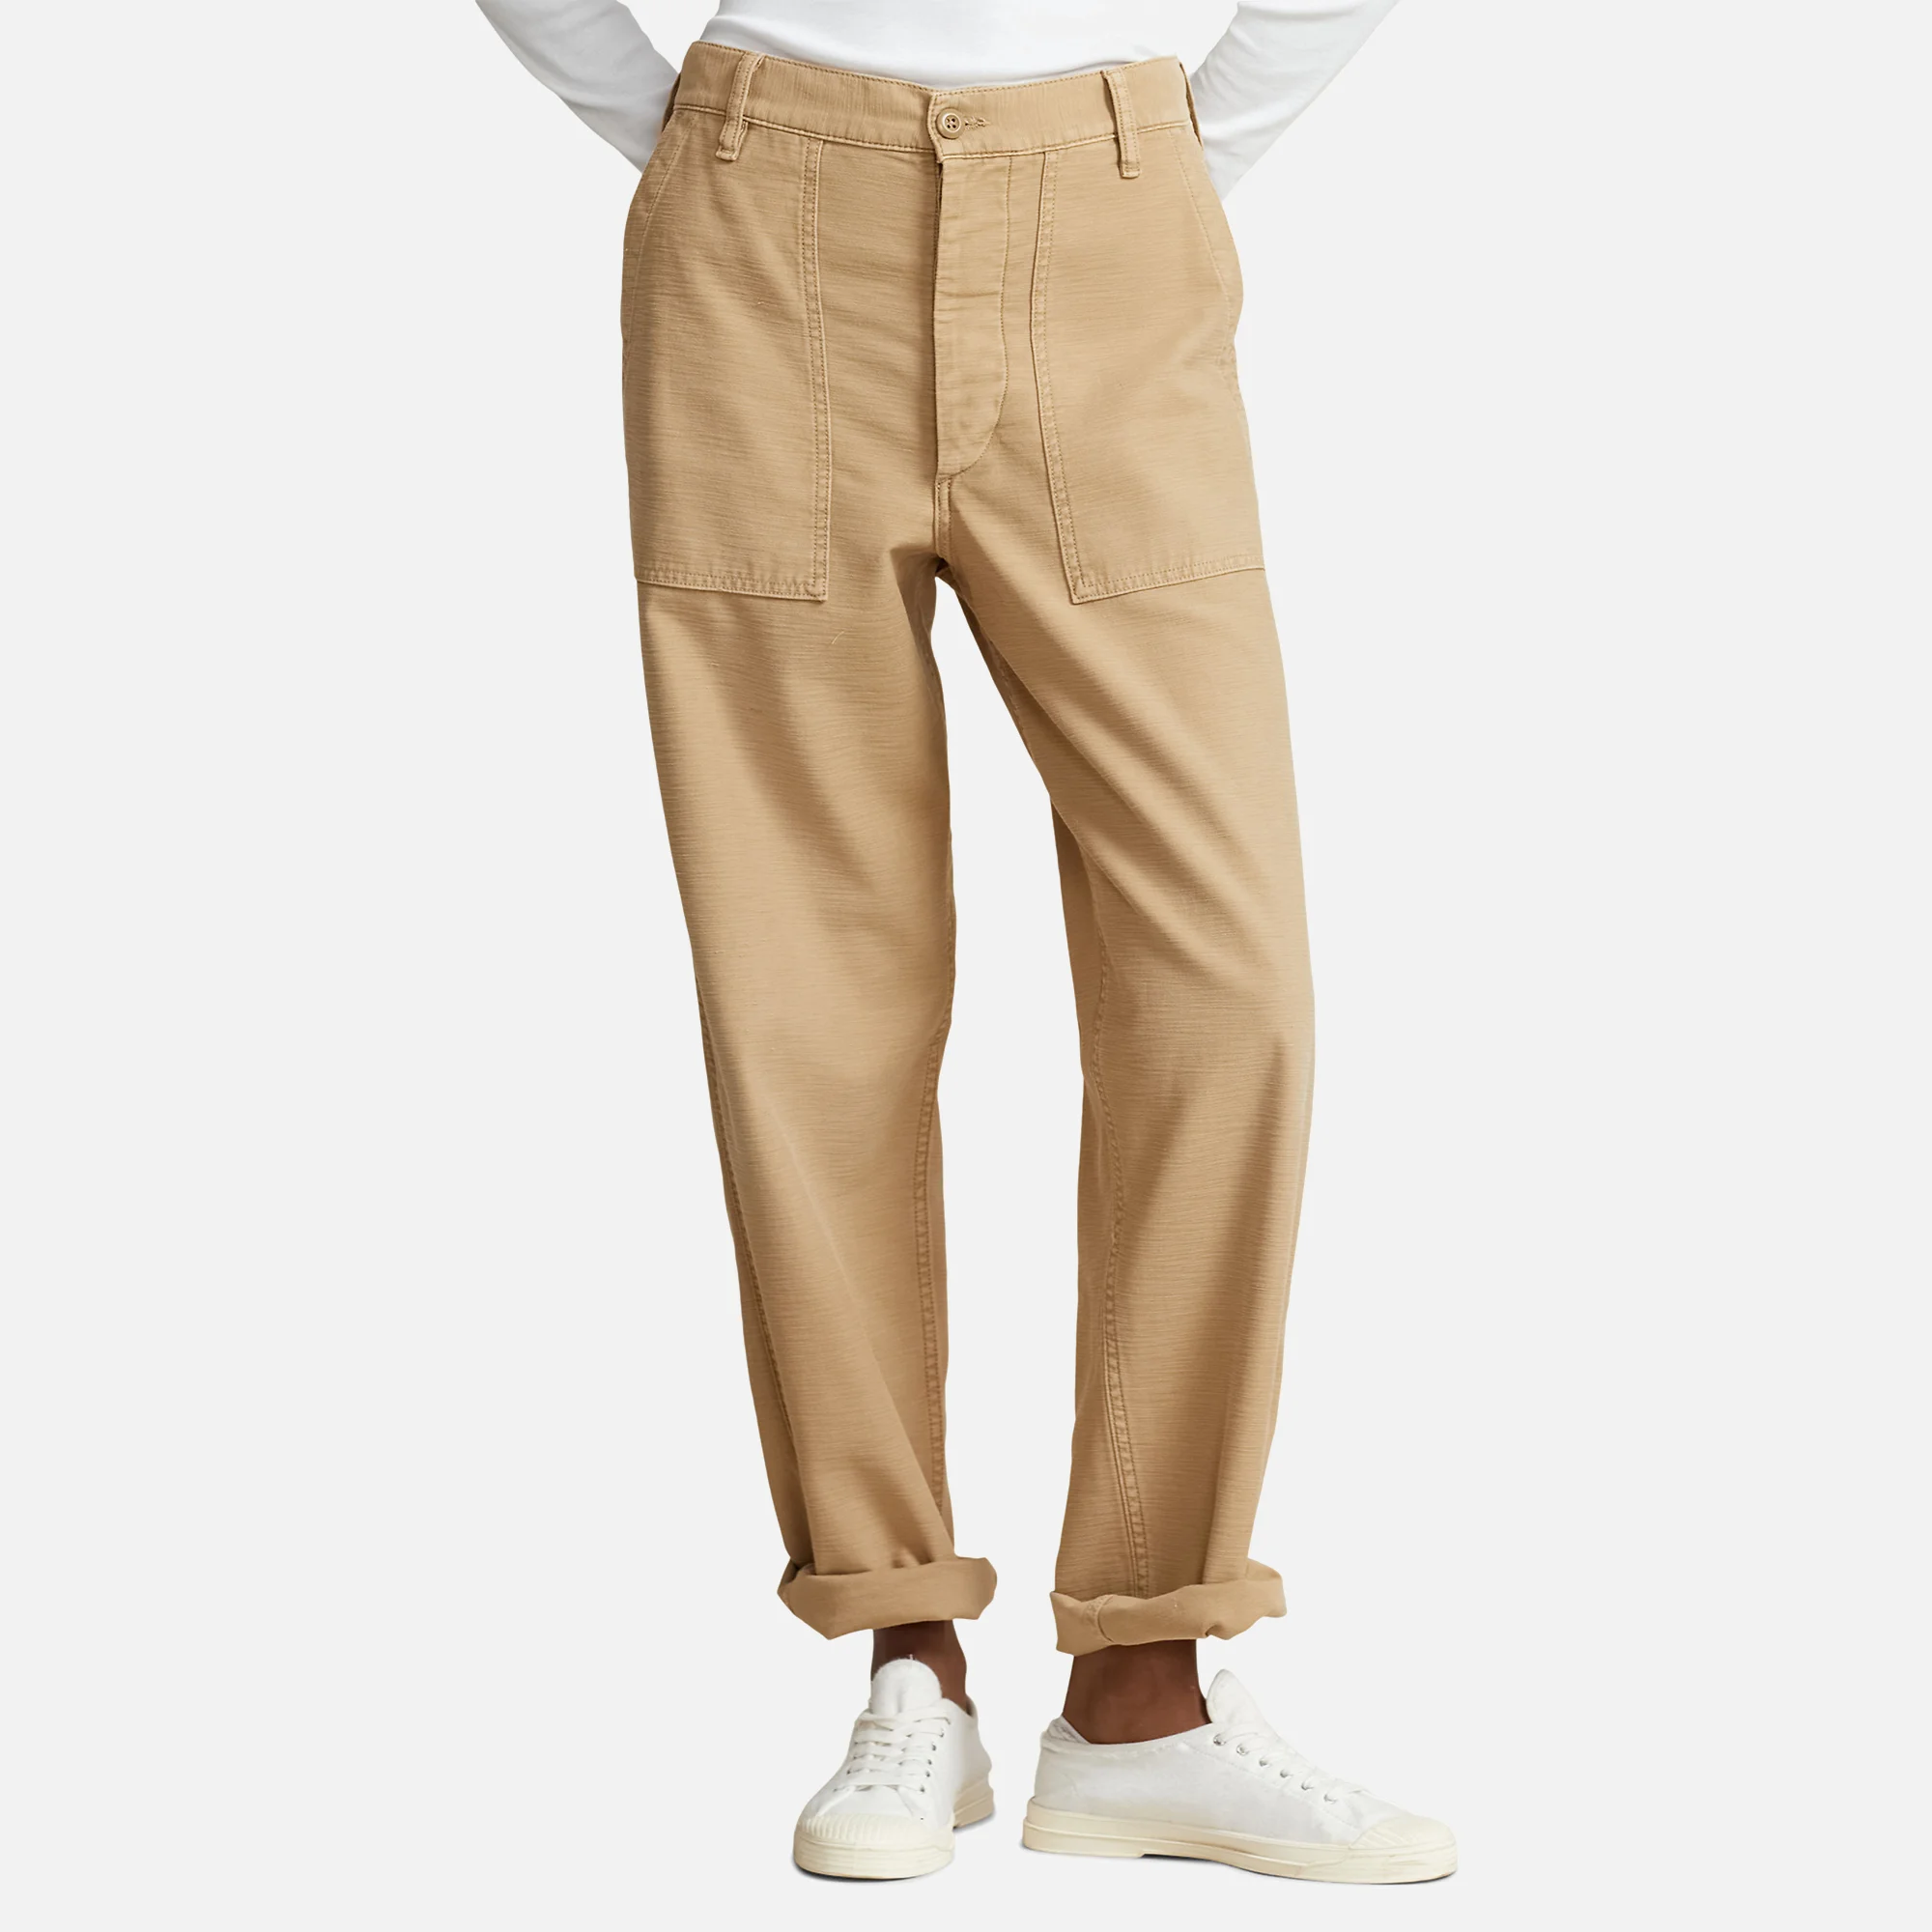 Polo Ralph Lauren Military Cotton Pants Image 1